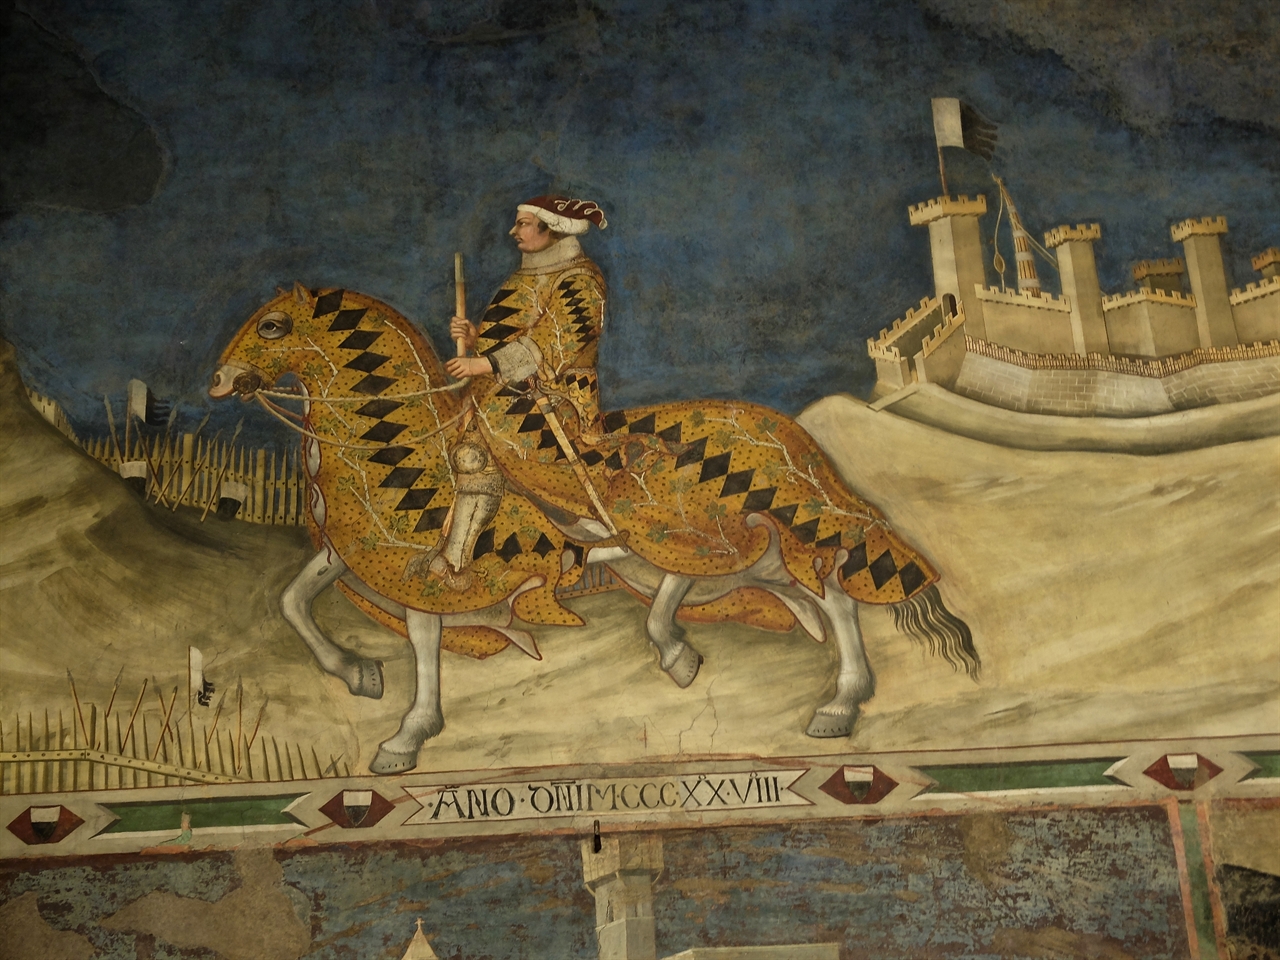 시모네 마르티니, '구이도리초 다 폴리아노 장군'(부분), 시에나 푸블리코 궁전. 주위 도시들을 정복하고 돌아오는 장군의 모습을 당당하게 묘사한 이 그림은 전성기 시에나의 영광을 상징하는 작품입니다.